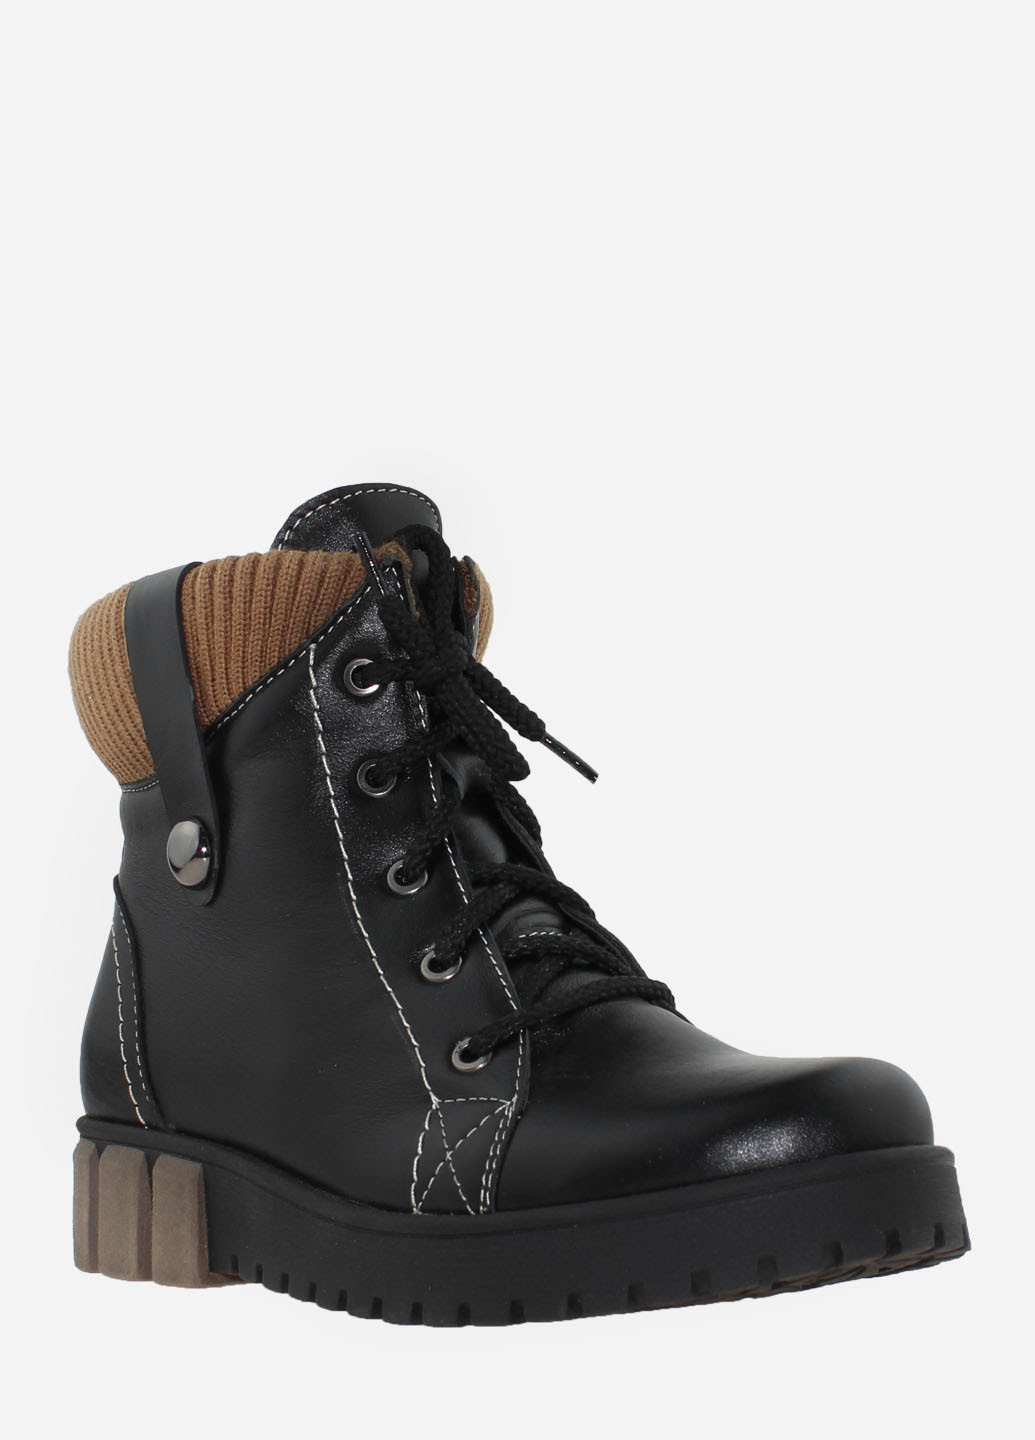 Зимние ботинки rg238-1 черный Gampr